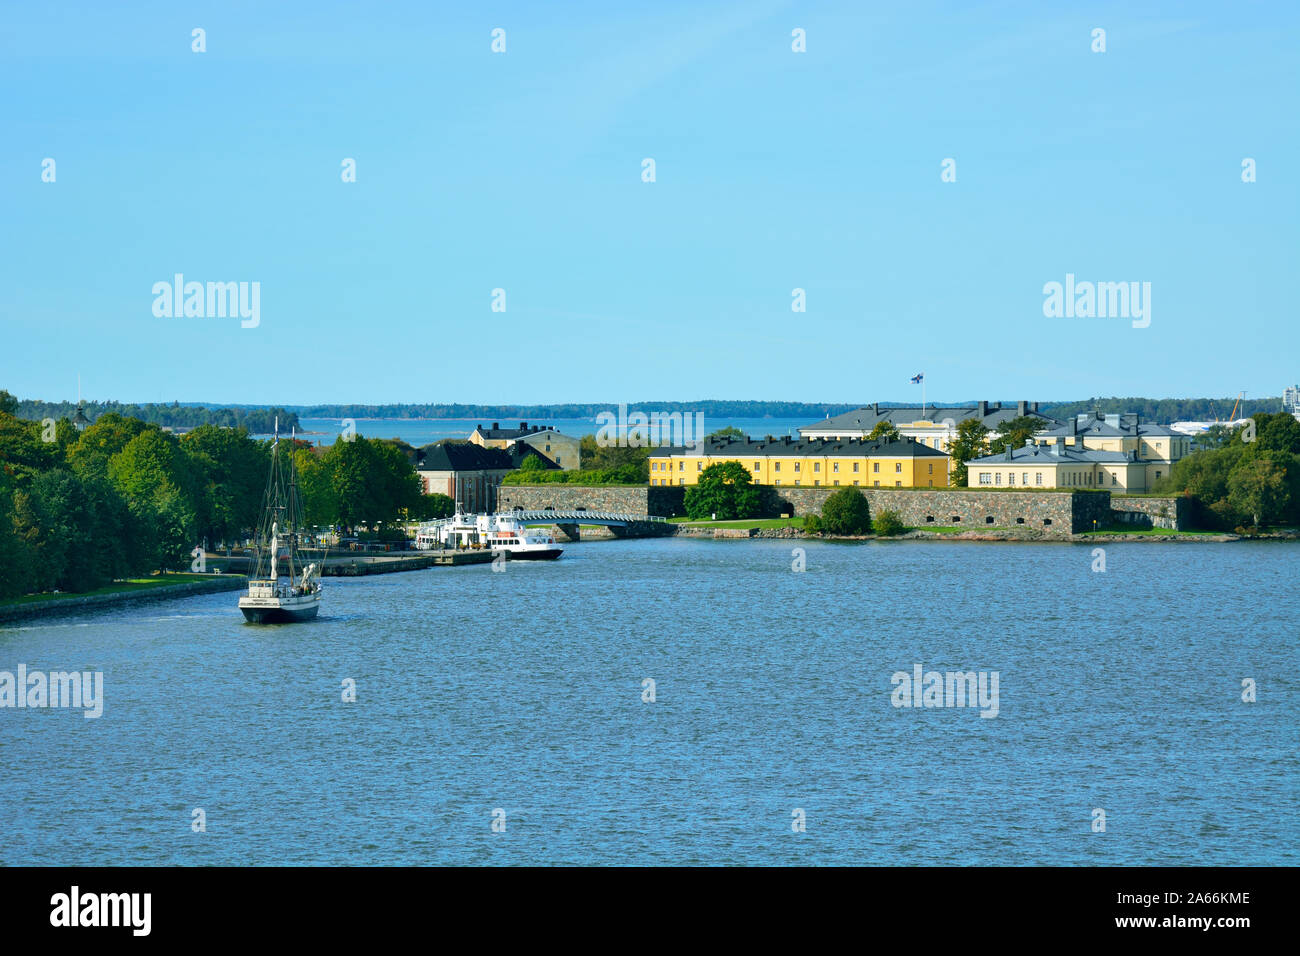 Seefestung Suomenlinna in der Helsinkier Bucht. Ein Unesco Weltkulturerbe. Finnland Stockfoto